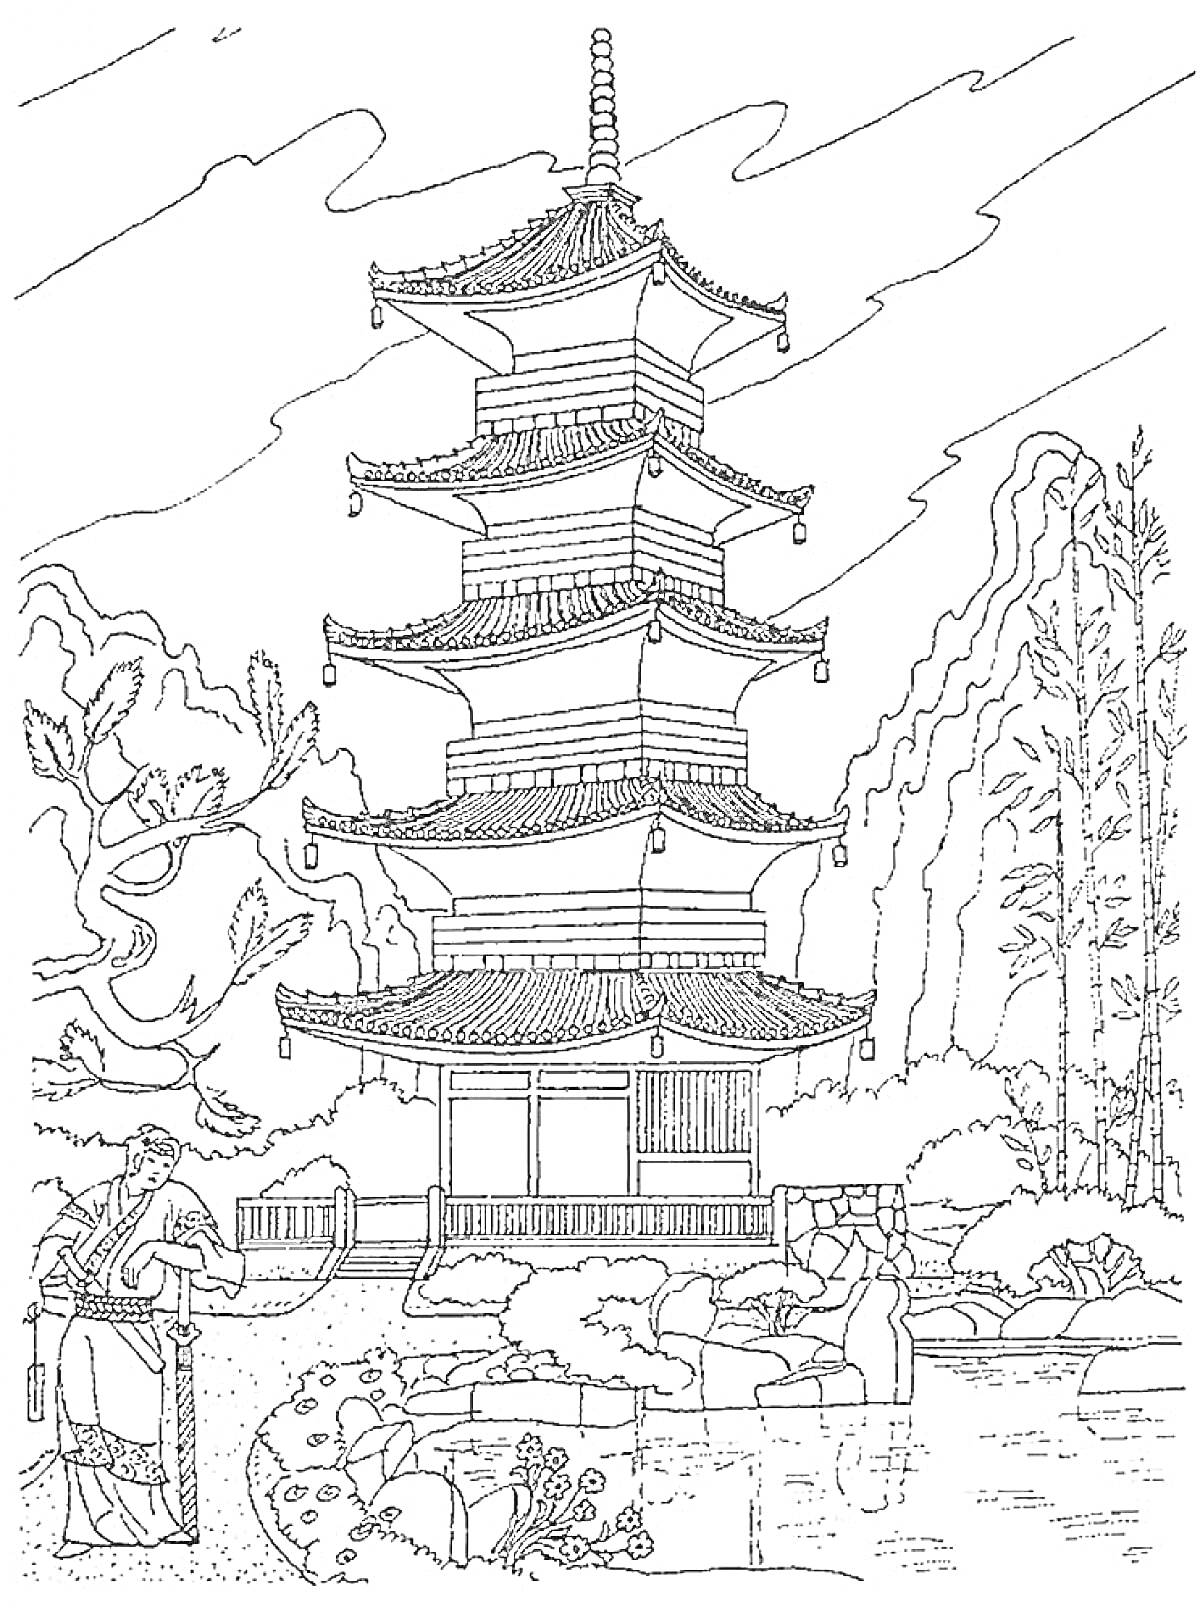 Пагода с садом и мостиком у подножья, человек в традиционной одежде